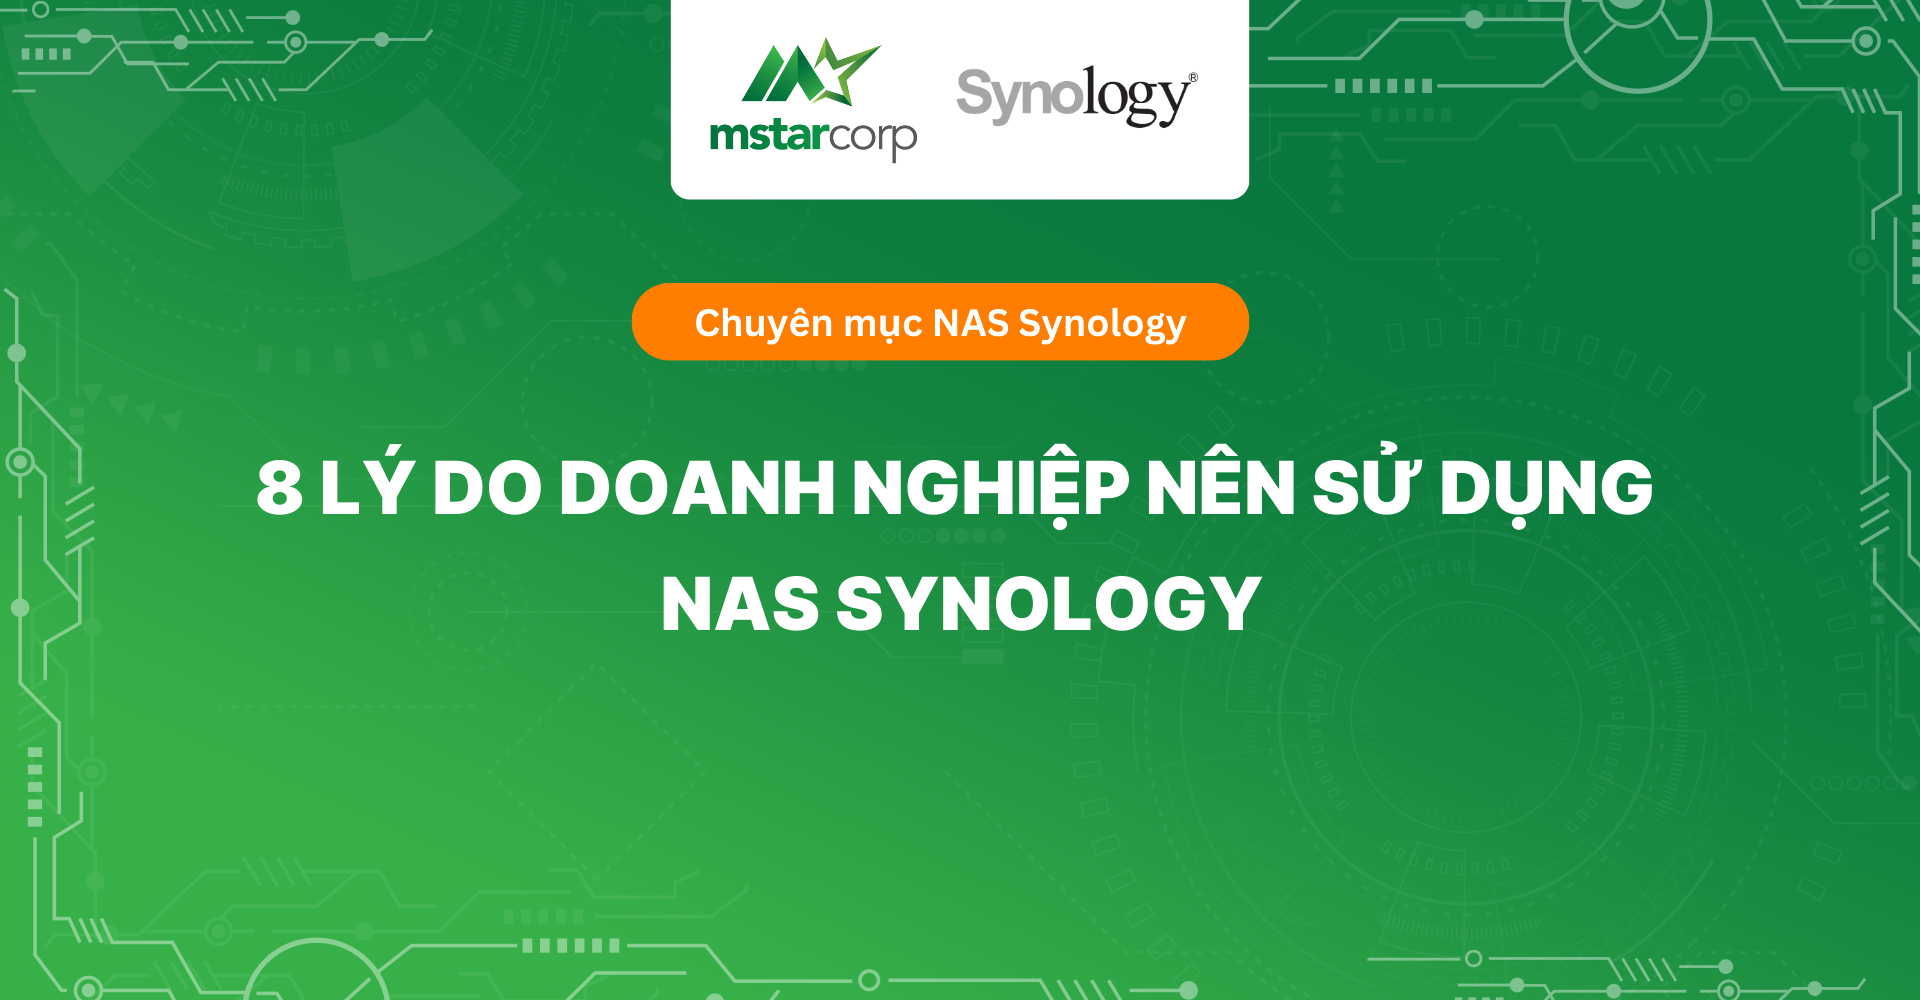 8 lý do doanh nghiệp nên sử dụng NAS Synology